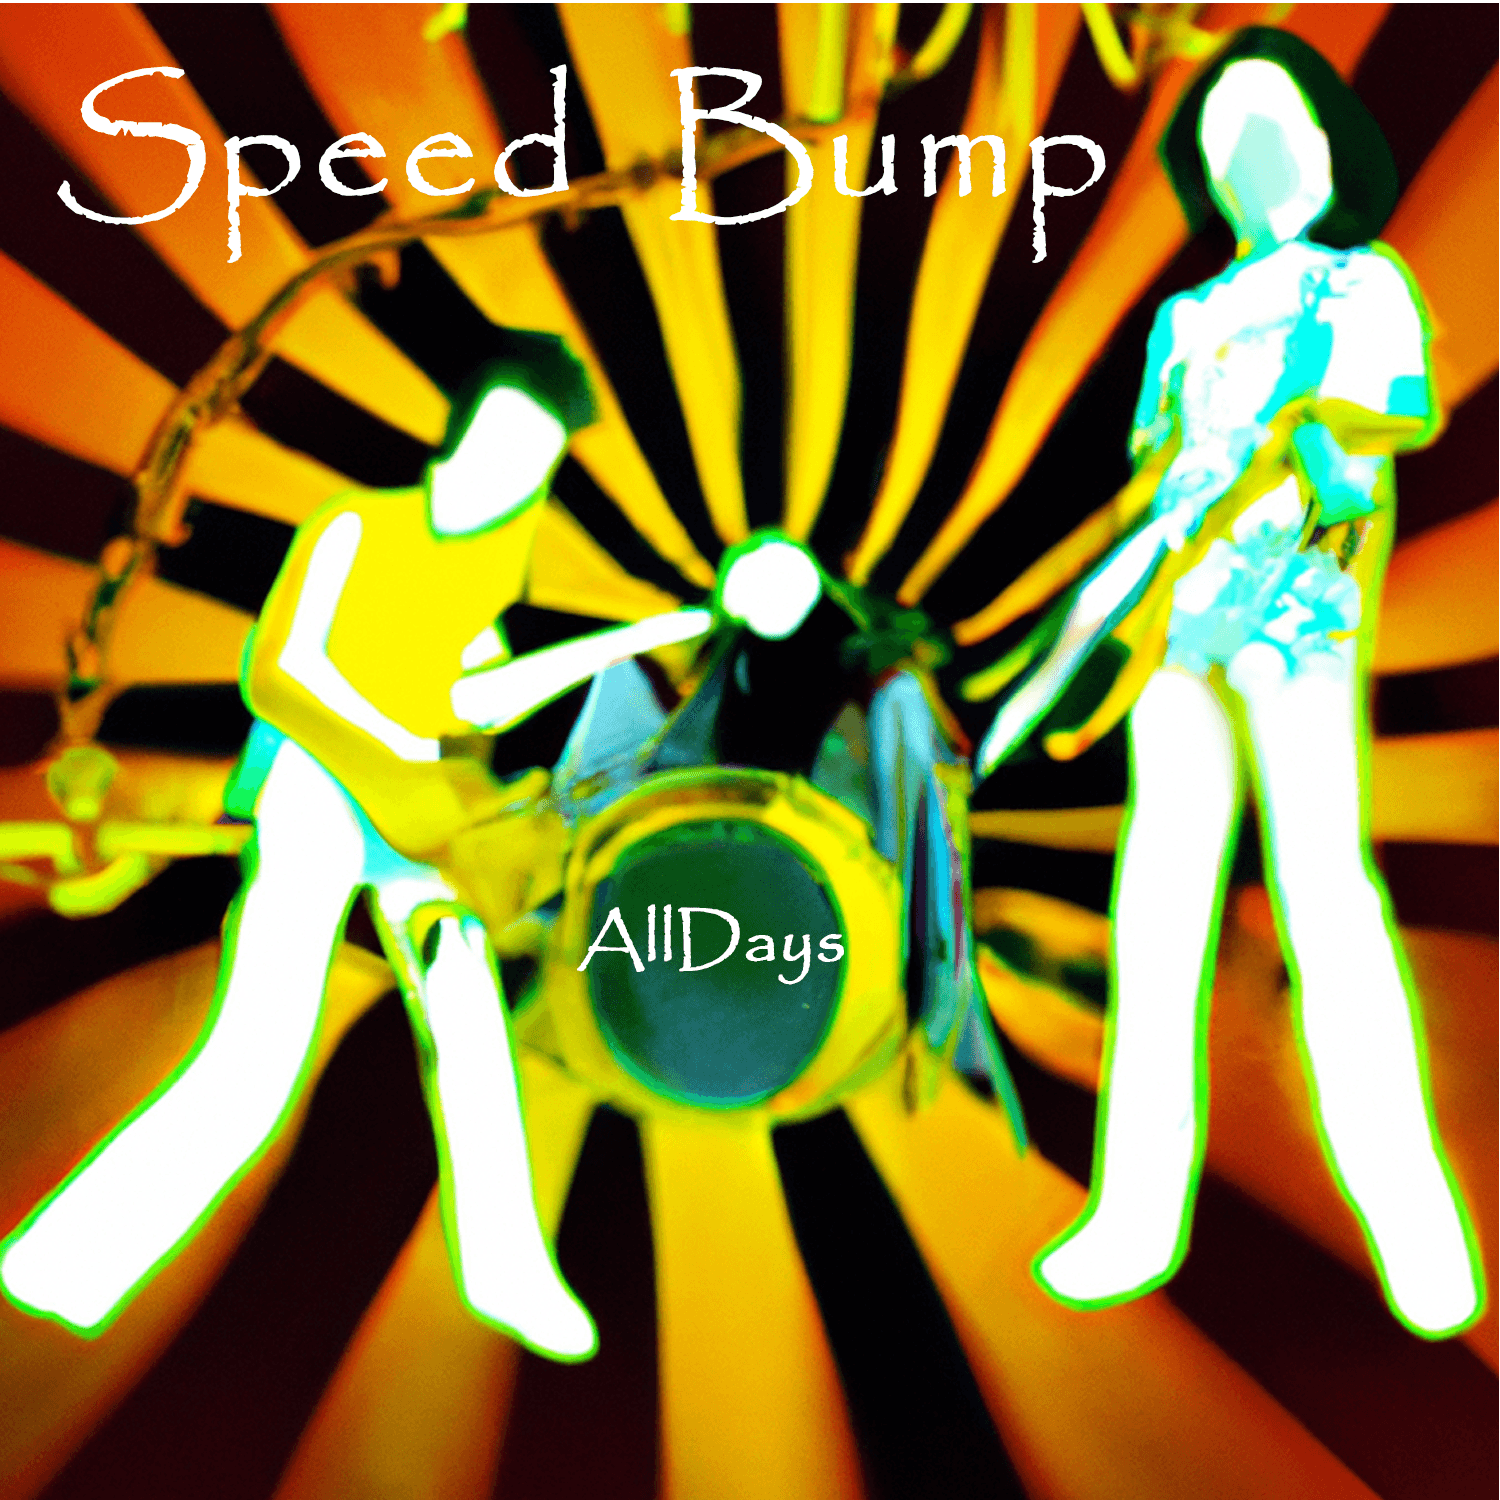 AllDays "Speed Bump" Full Song NFT 12/12